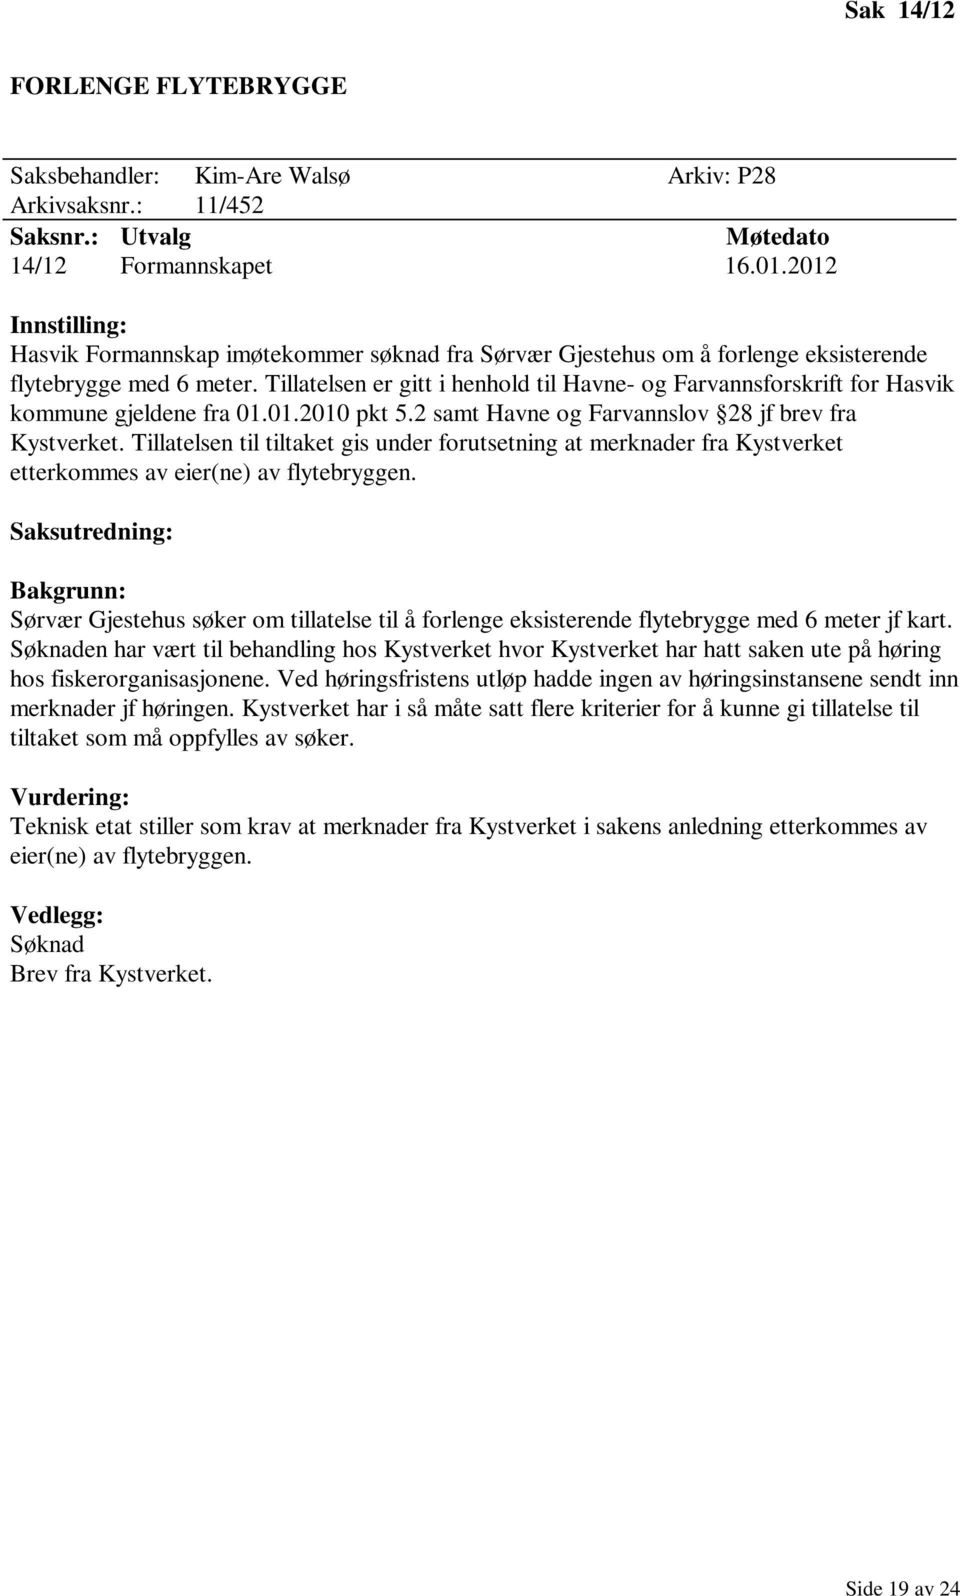 Tillatelsen er gitt i henhold til Havne- og Farvannsforskrift for Hasvik kommune gjeldene fra 01.01.2010 pkt 5.2 samt Havne og Farvannslov 28 jf brev fra Kystverket.